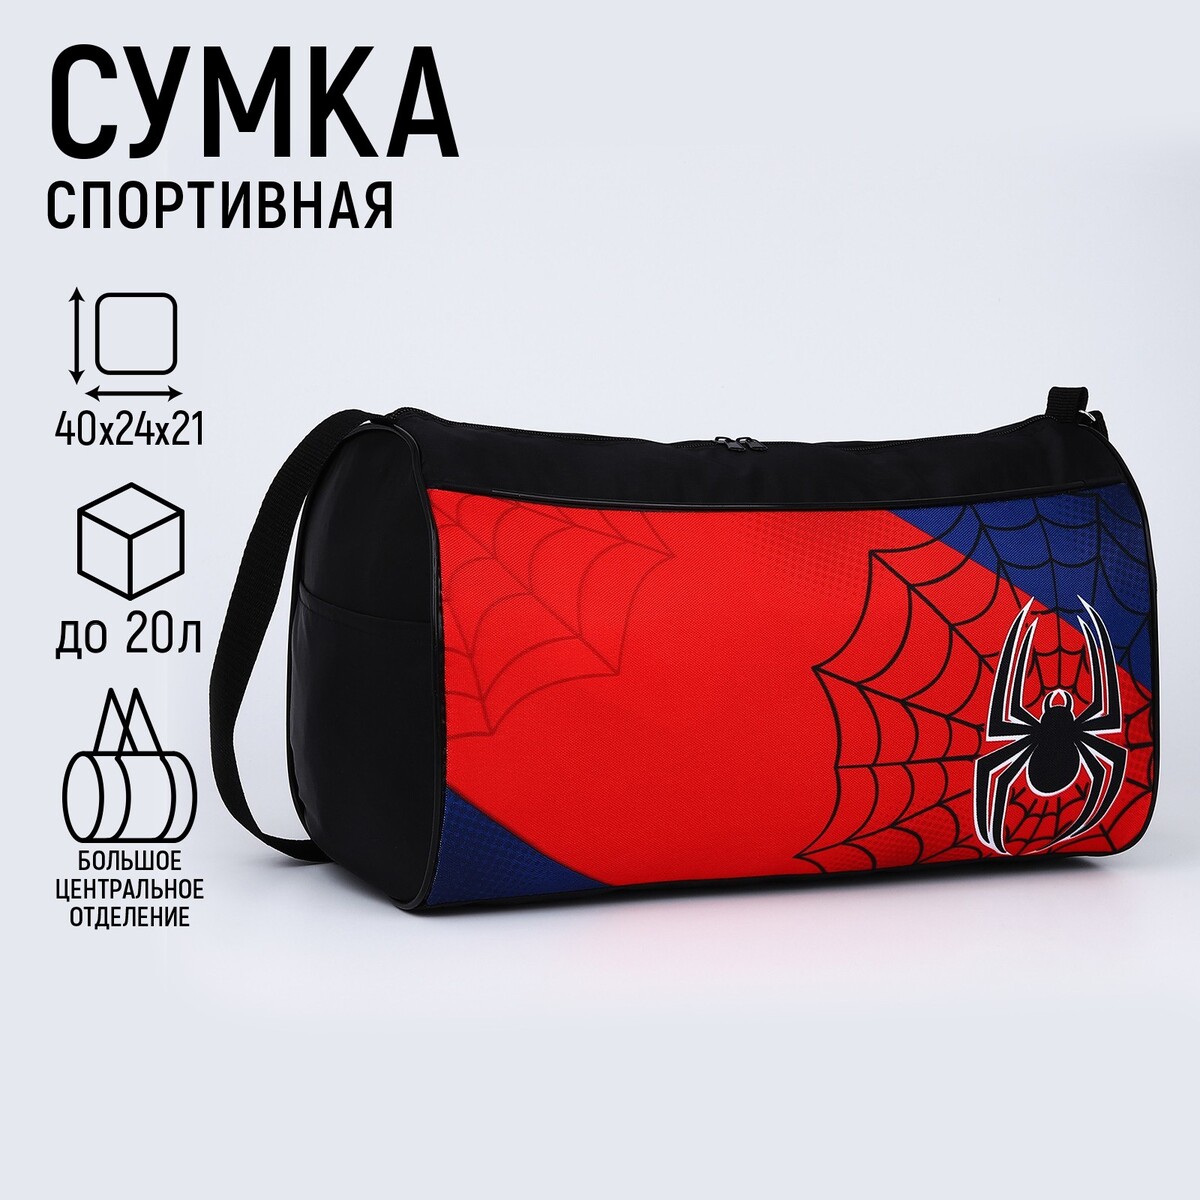 Сумка спортивная паук, 40х21х24 см, цвет черный, красный, синий